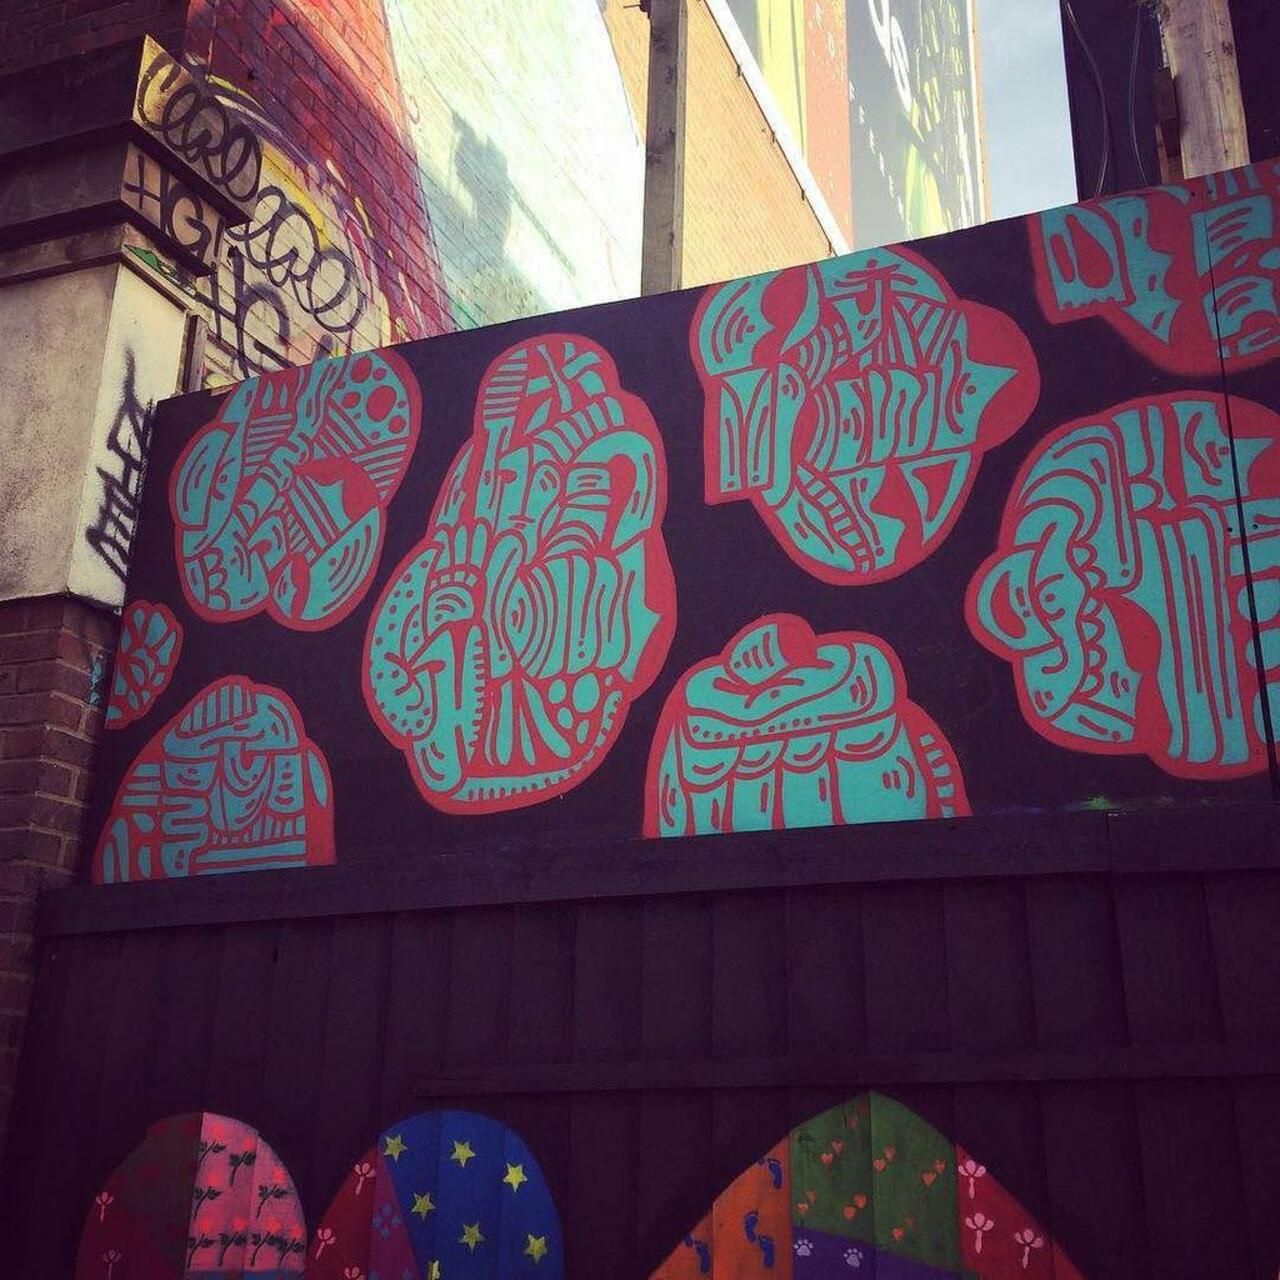 #graffitiporn  #wallporn #mural  #murales  #graffitiporn #lovestreetart #streetart #graffiti #london #loveshoreditc… http://t.co/NDKPDvuNKI